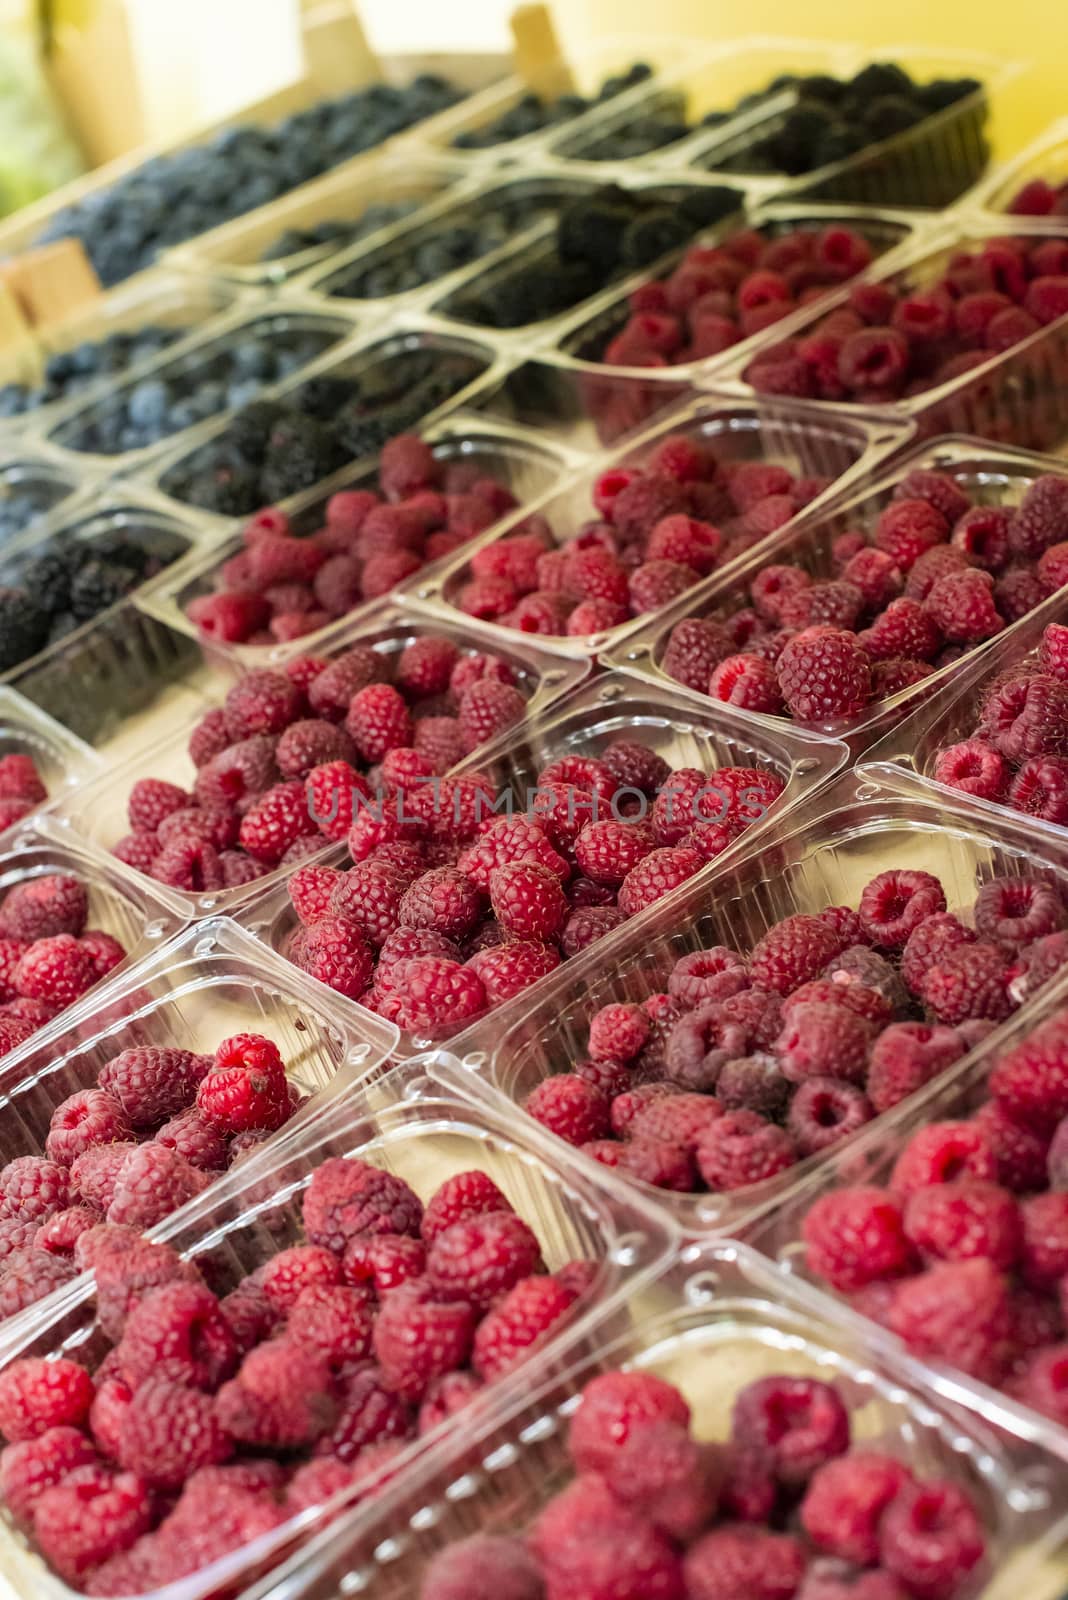 Raspberries and blueberries on shelf in the market. by deyan_georgiev